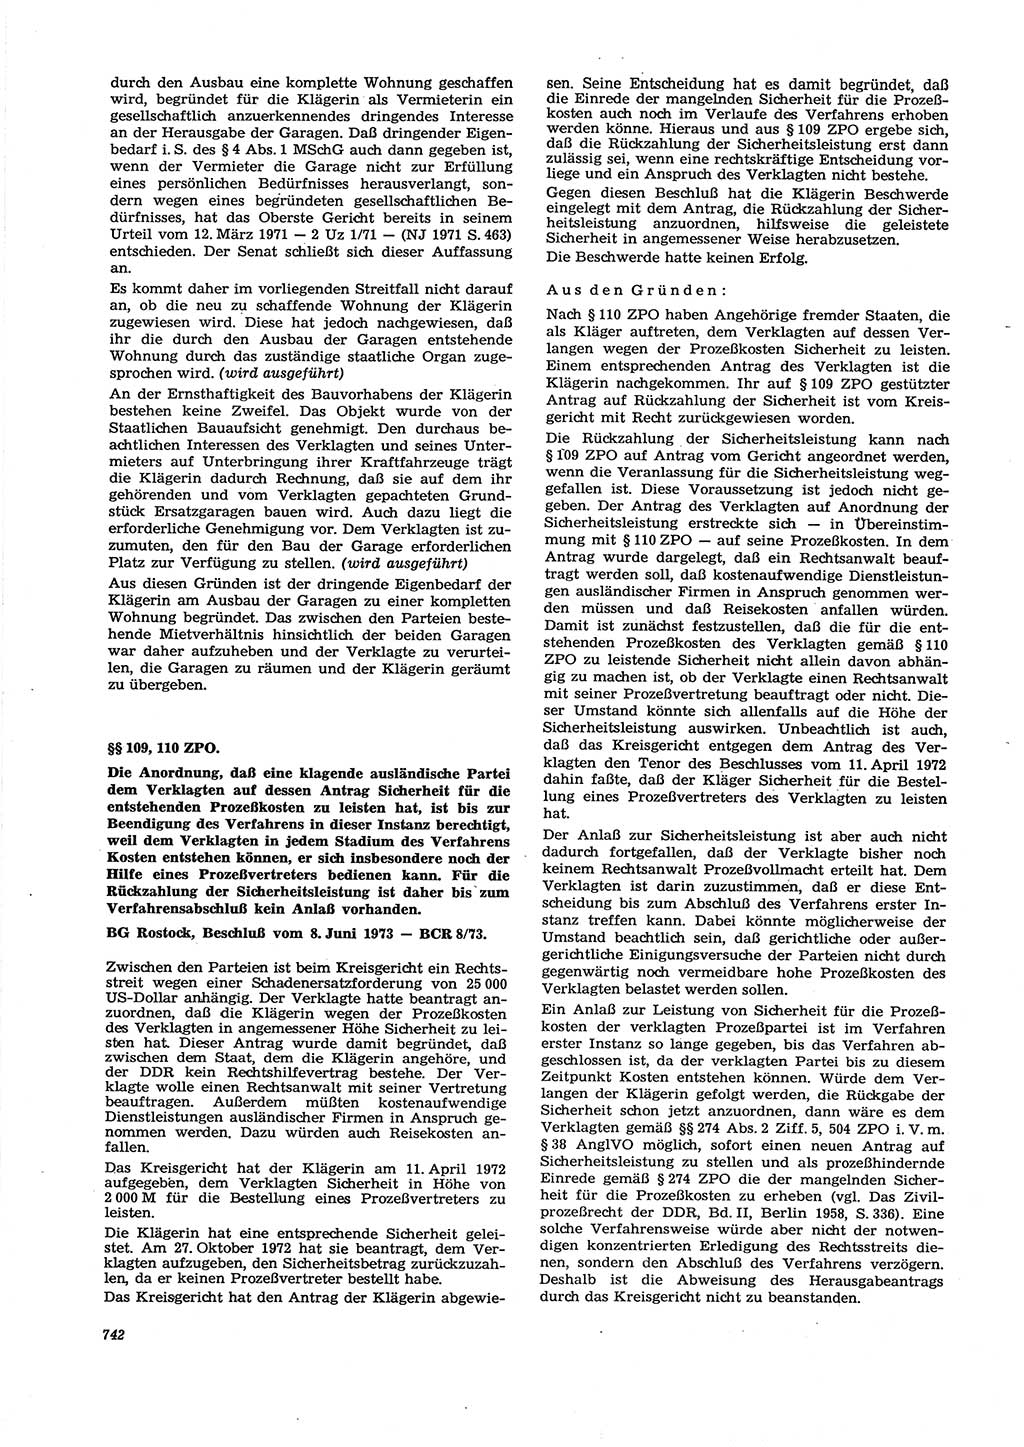 Neue Justiz (NJ), Zeitschrift für Recht und Rechtswissenschaft [Deutsche Demokratische Republik (DDR)], 27. Jahrgang 1973, Seite 742 (NJ DDR 1973, S. 742)